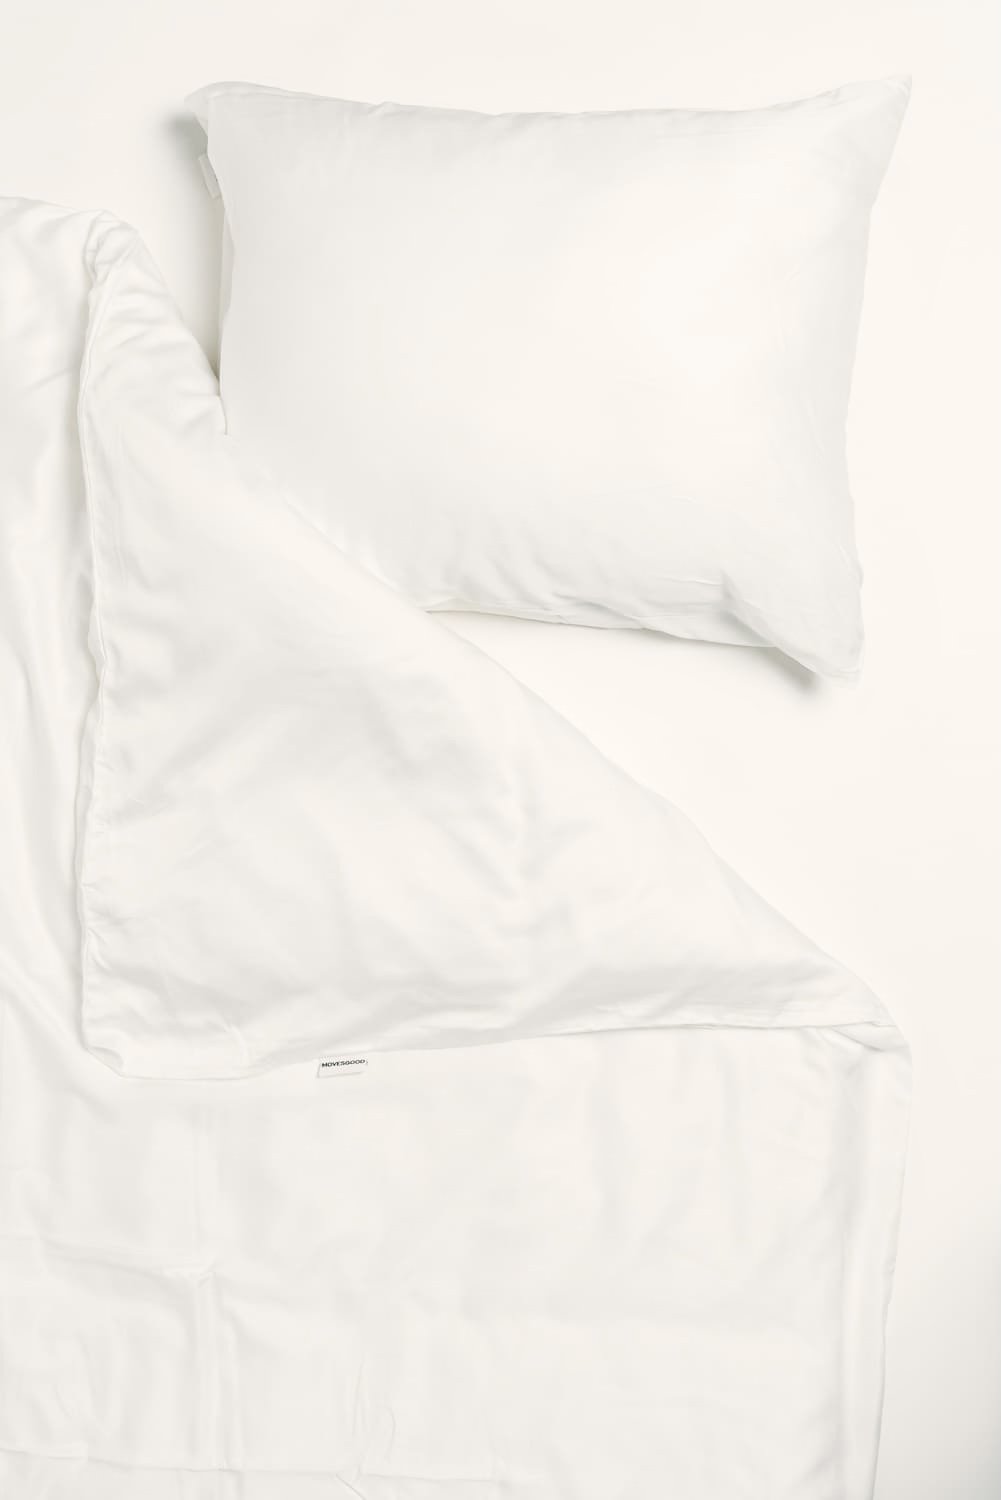 Bamboo Pillowcase x 2 - White